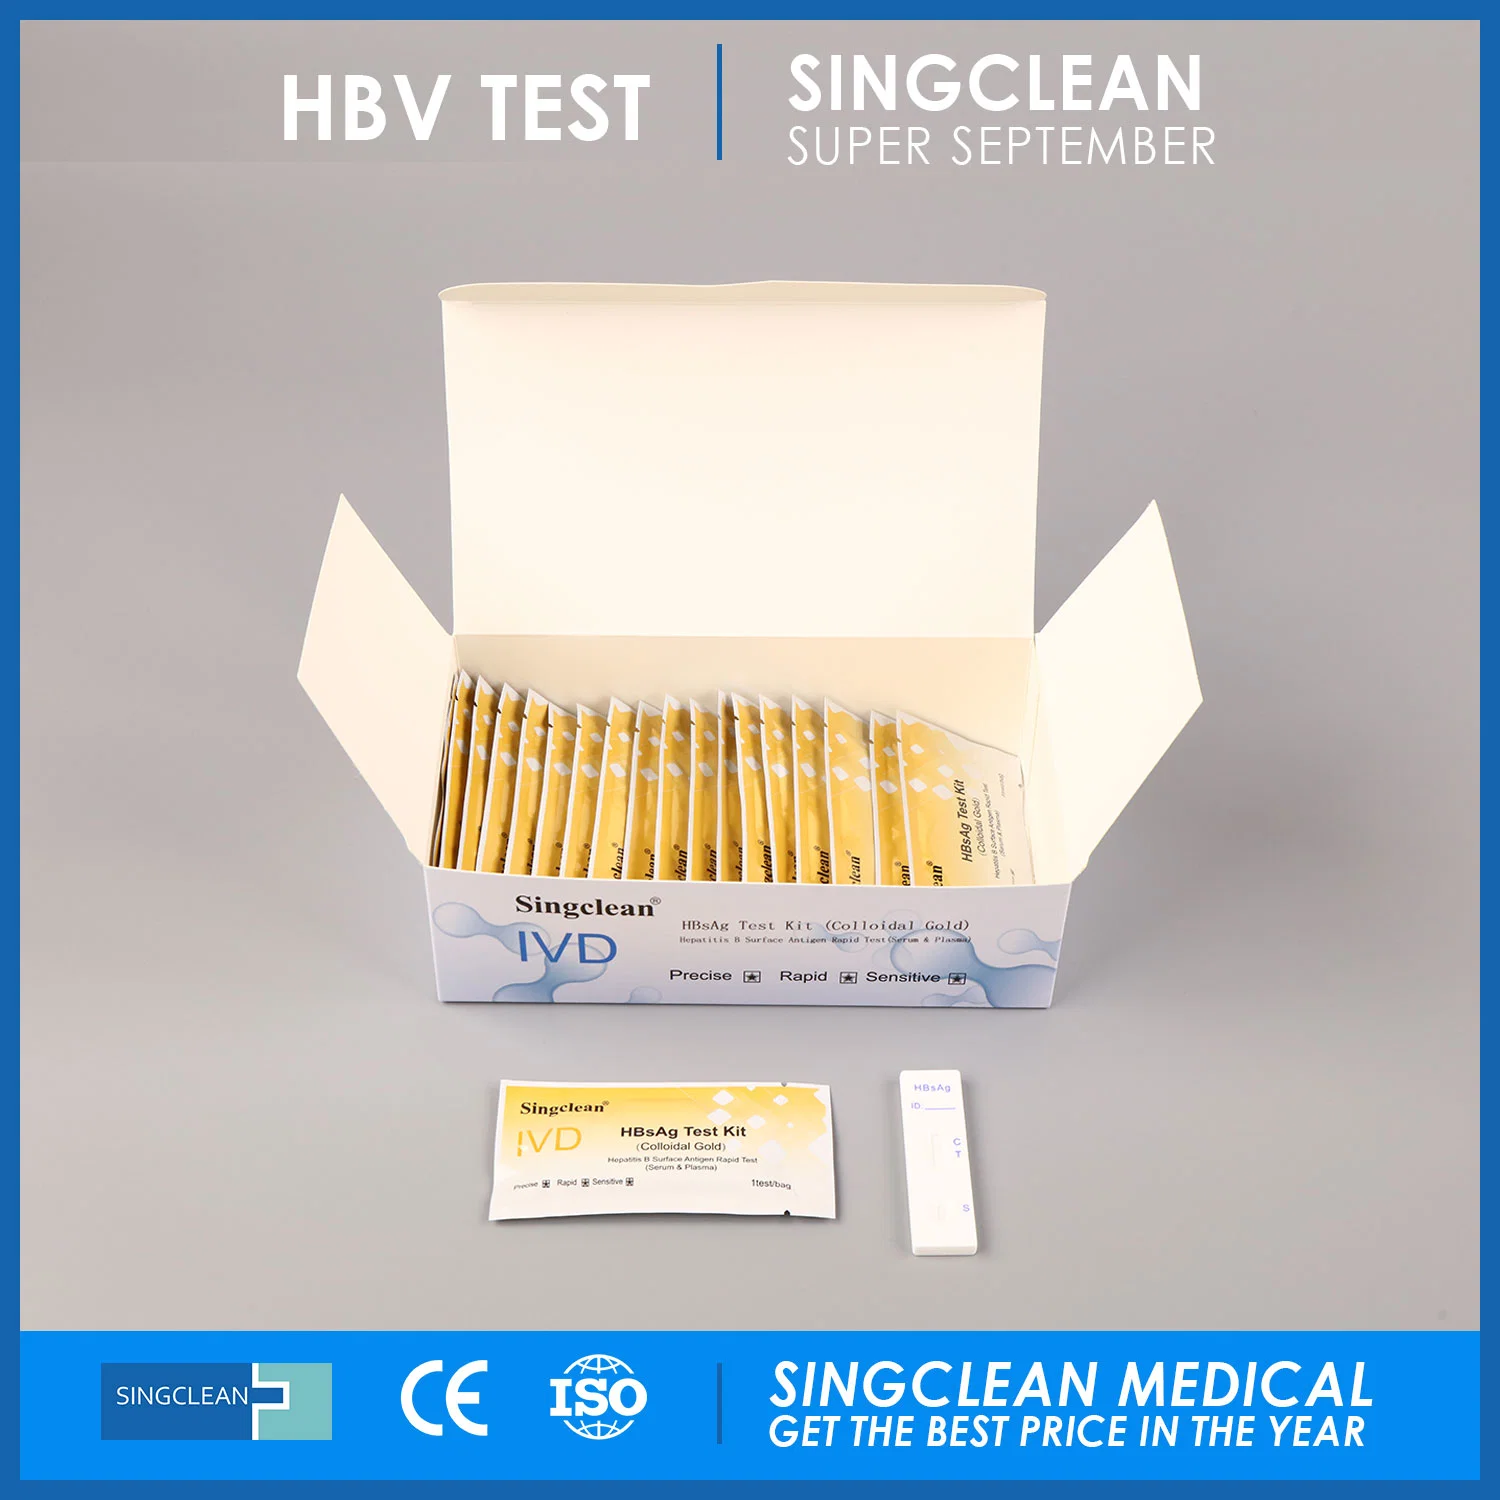 Singclean Vente en gros CE Approuvé IVD Sérum humain et Plasma HBV Kit de test médical rapide du virus de l'hépatite B Hbsag Antigène de surface (Or colloïdal) pour l'infection par le VHB.